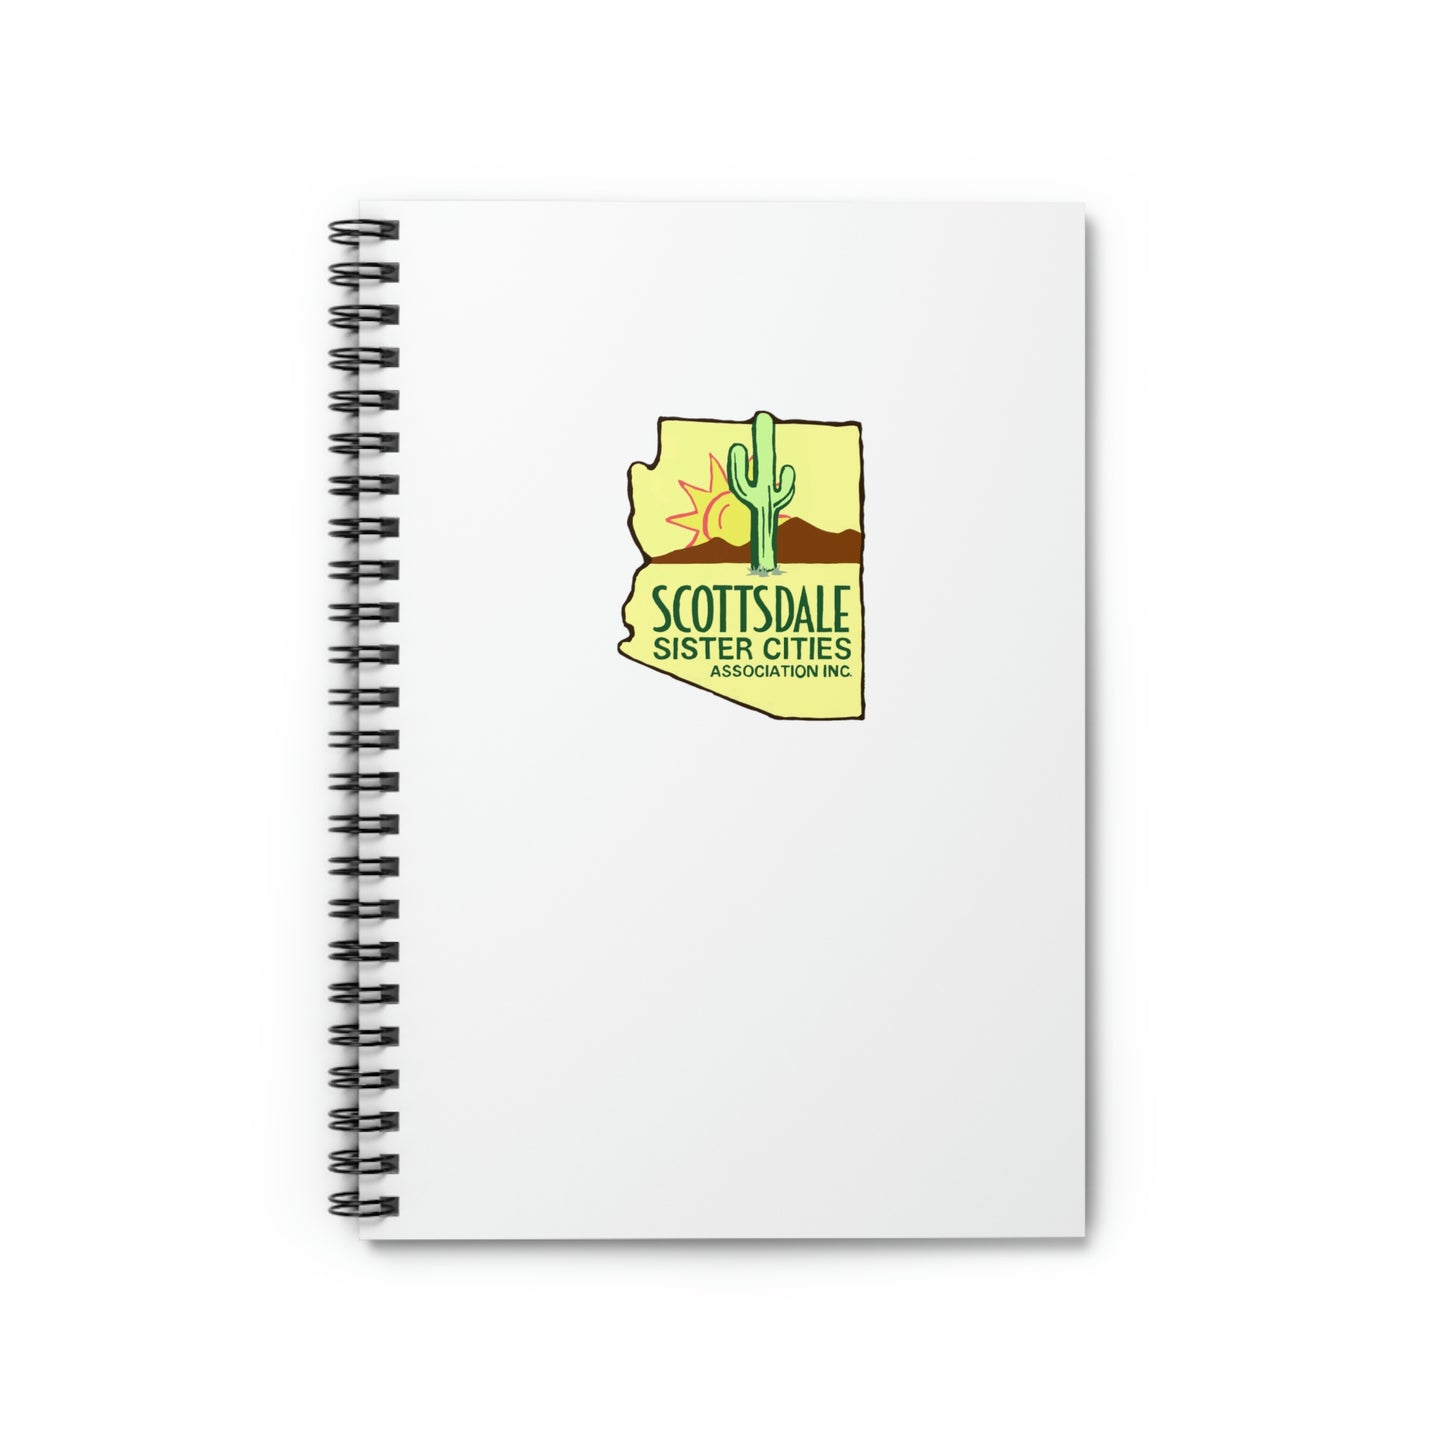 SSCA Logo Spiral Notebook - Ruled Line